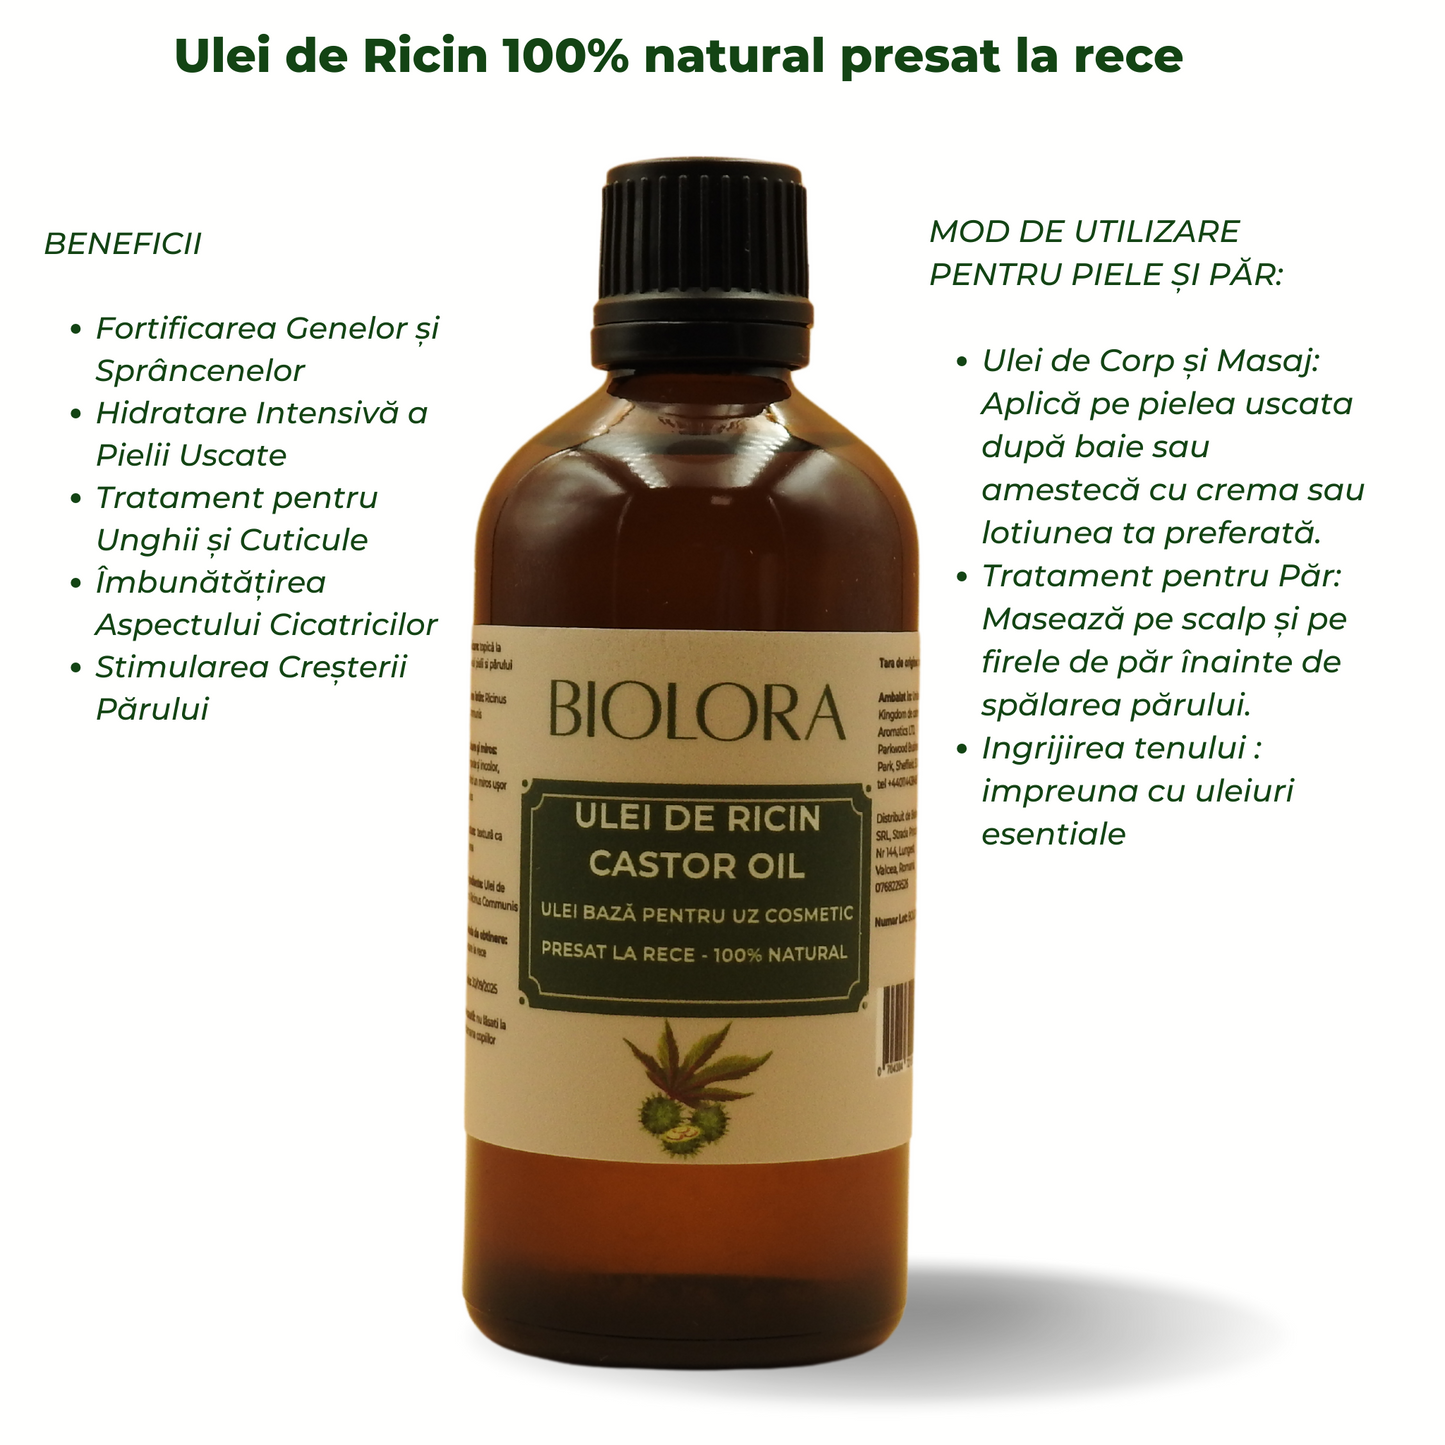 Ulei de Ricin(Castor Oil) Biolora, presat la rece, 100% natural, uz cosmetic, pentru ingrijirea pielii si parului, 100 ml